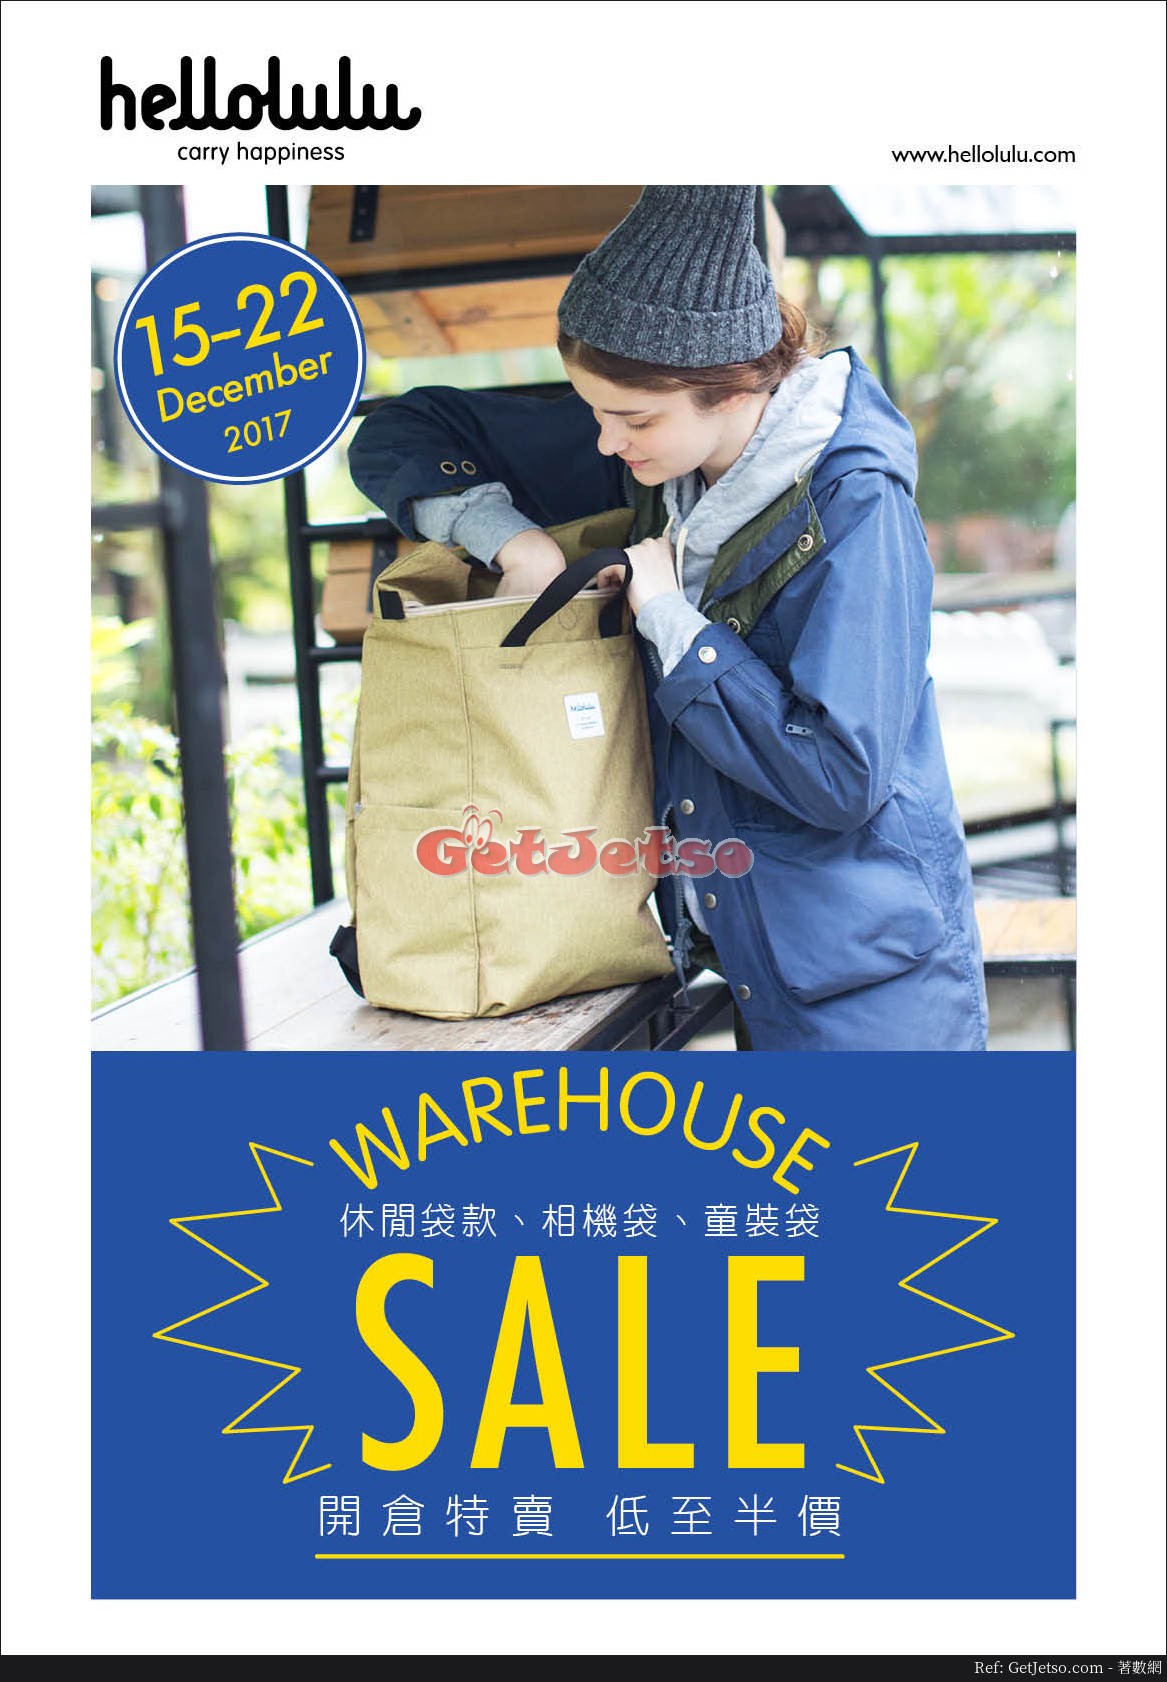 hellolulu 休閒袋款、相機袋、童裝袋低至半價開倉優惠(17年12月15-22日)圖片1